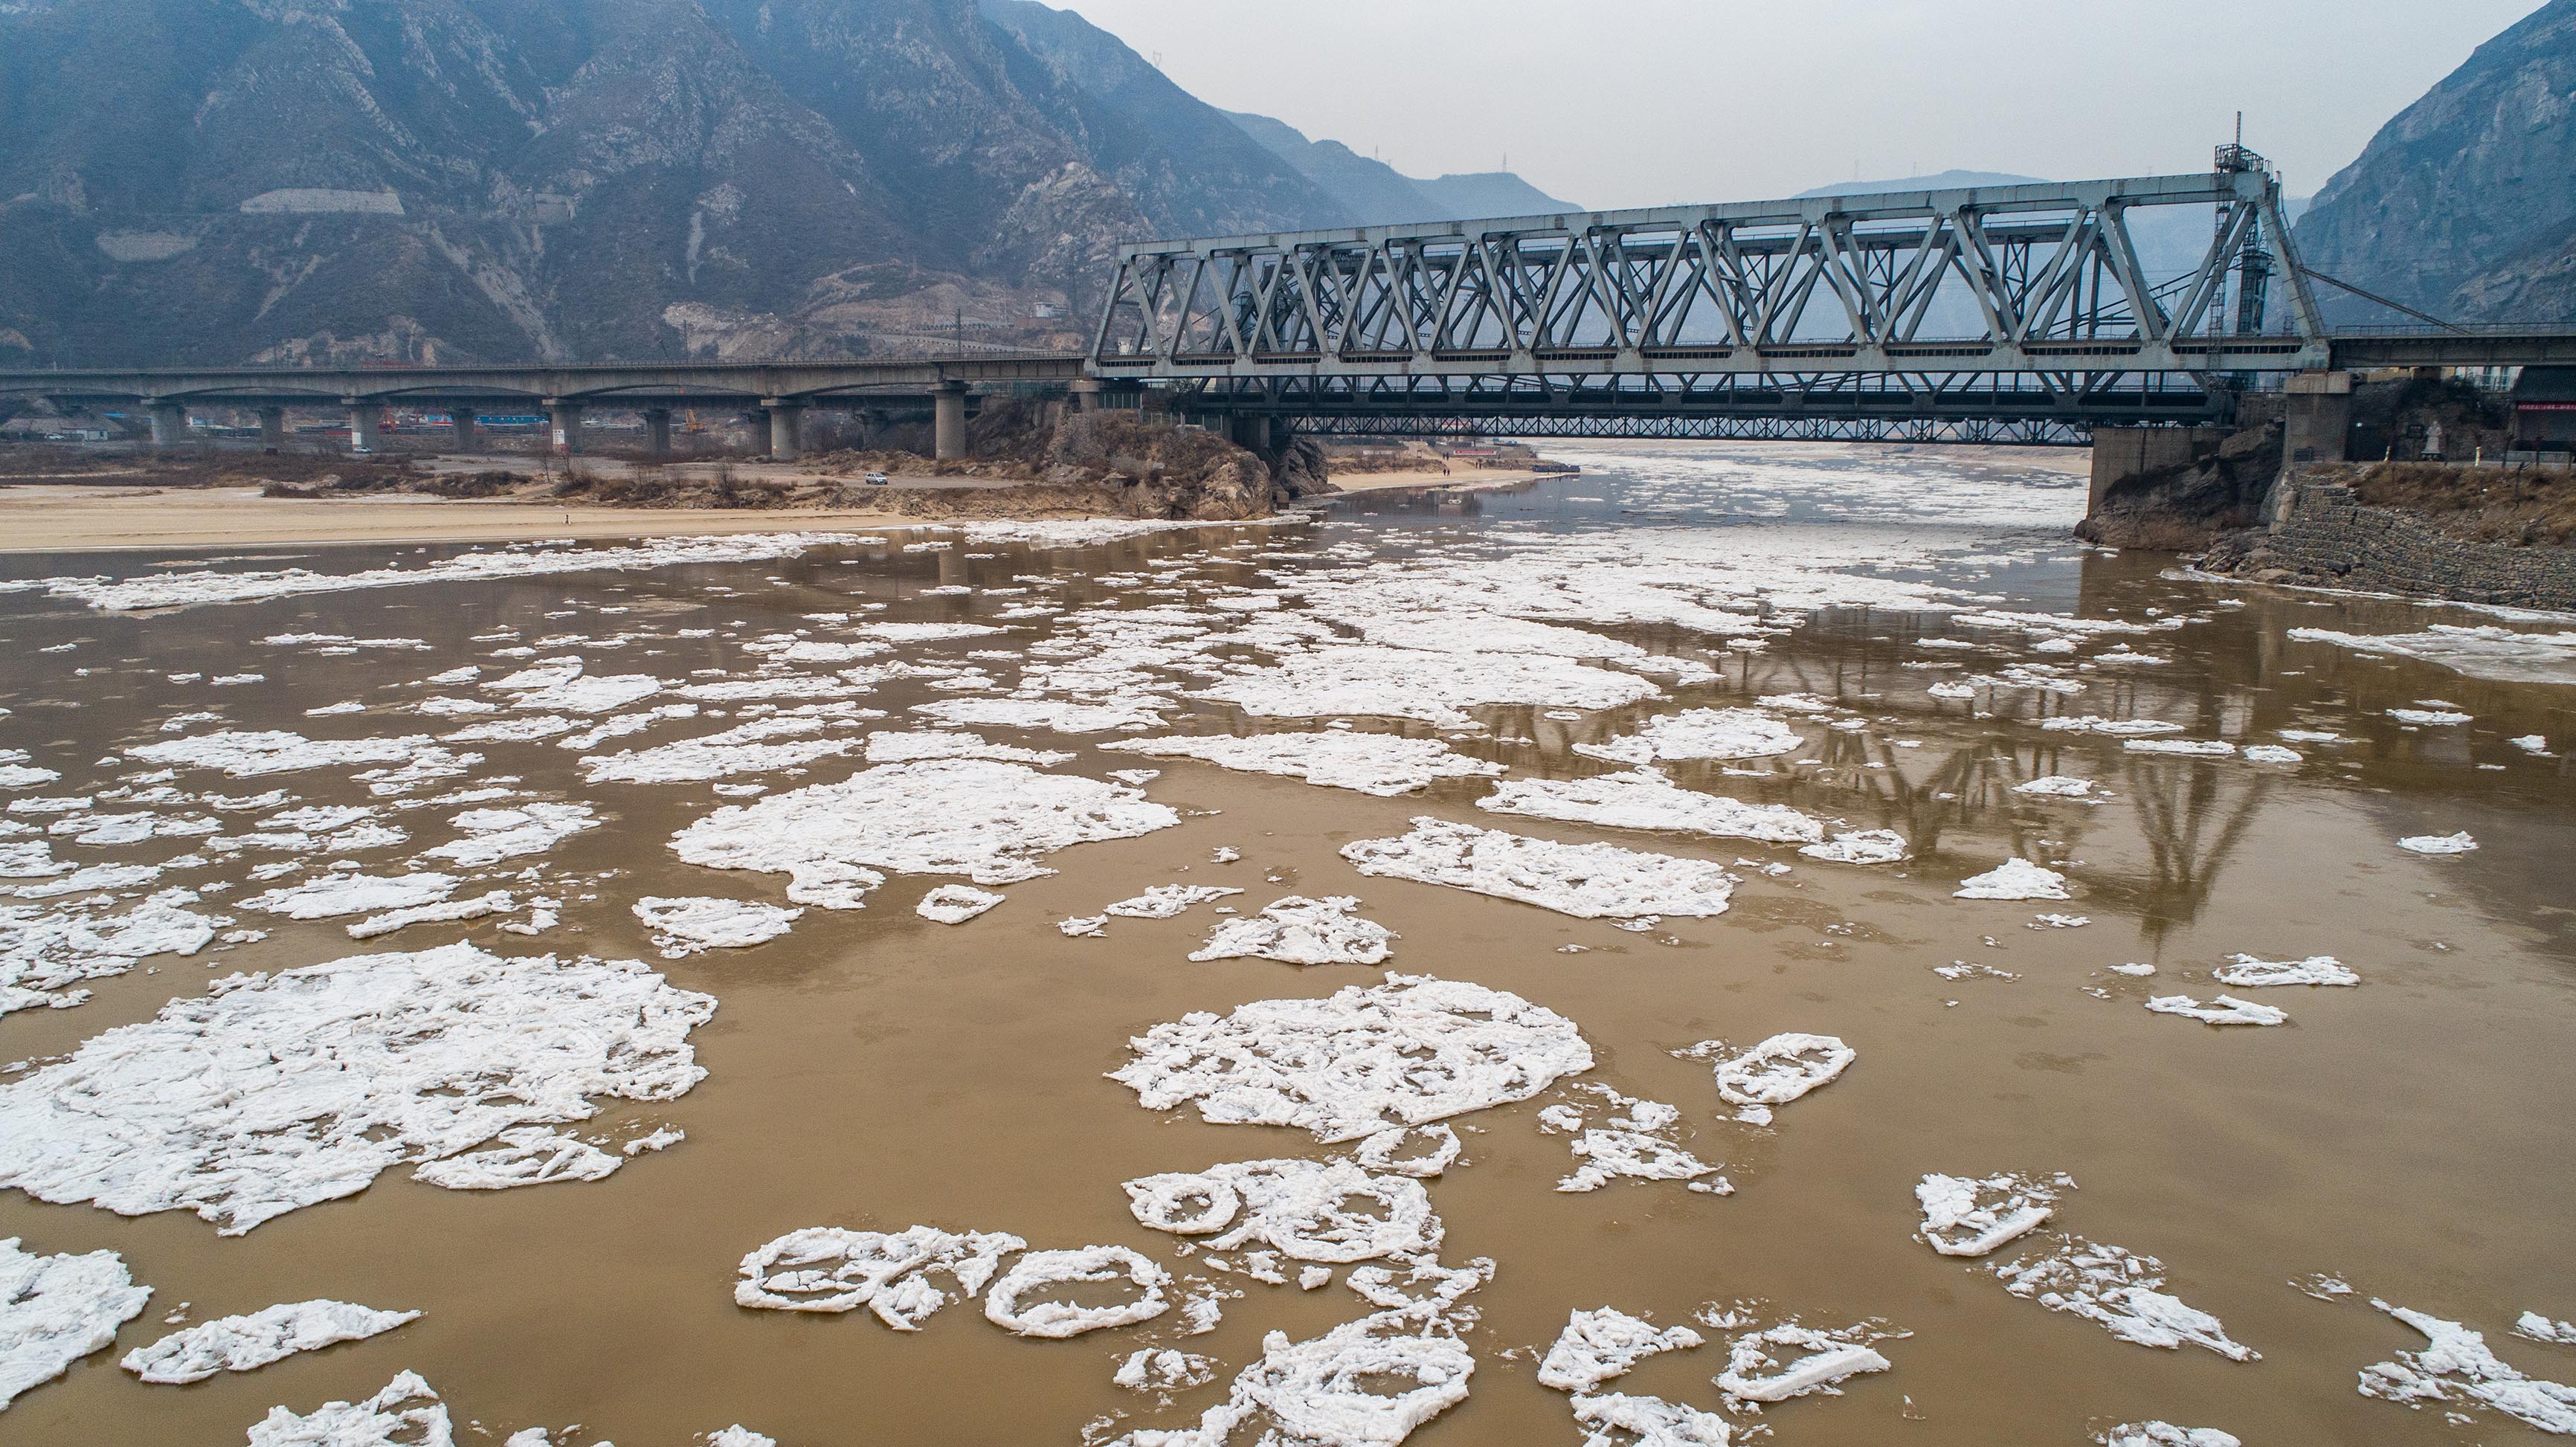 黄河凌汛的河段图片